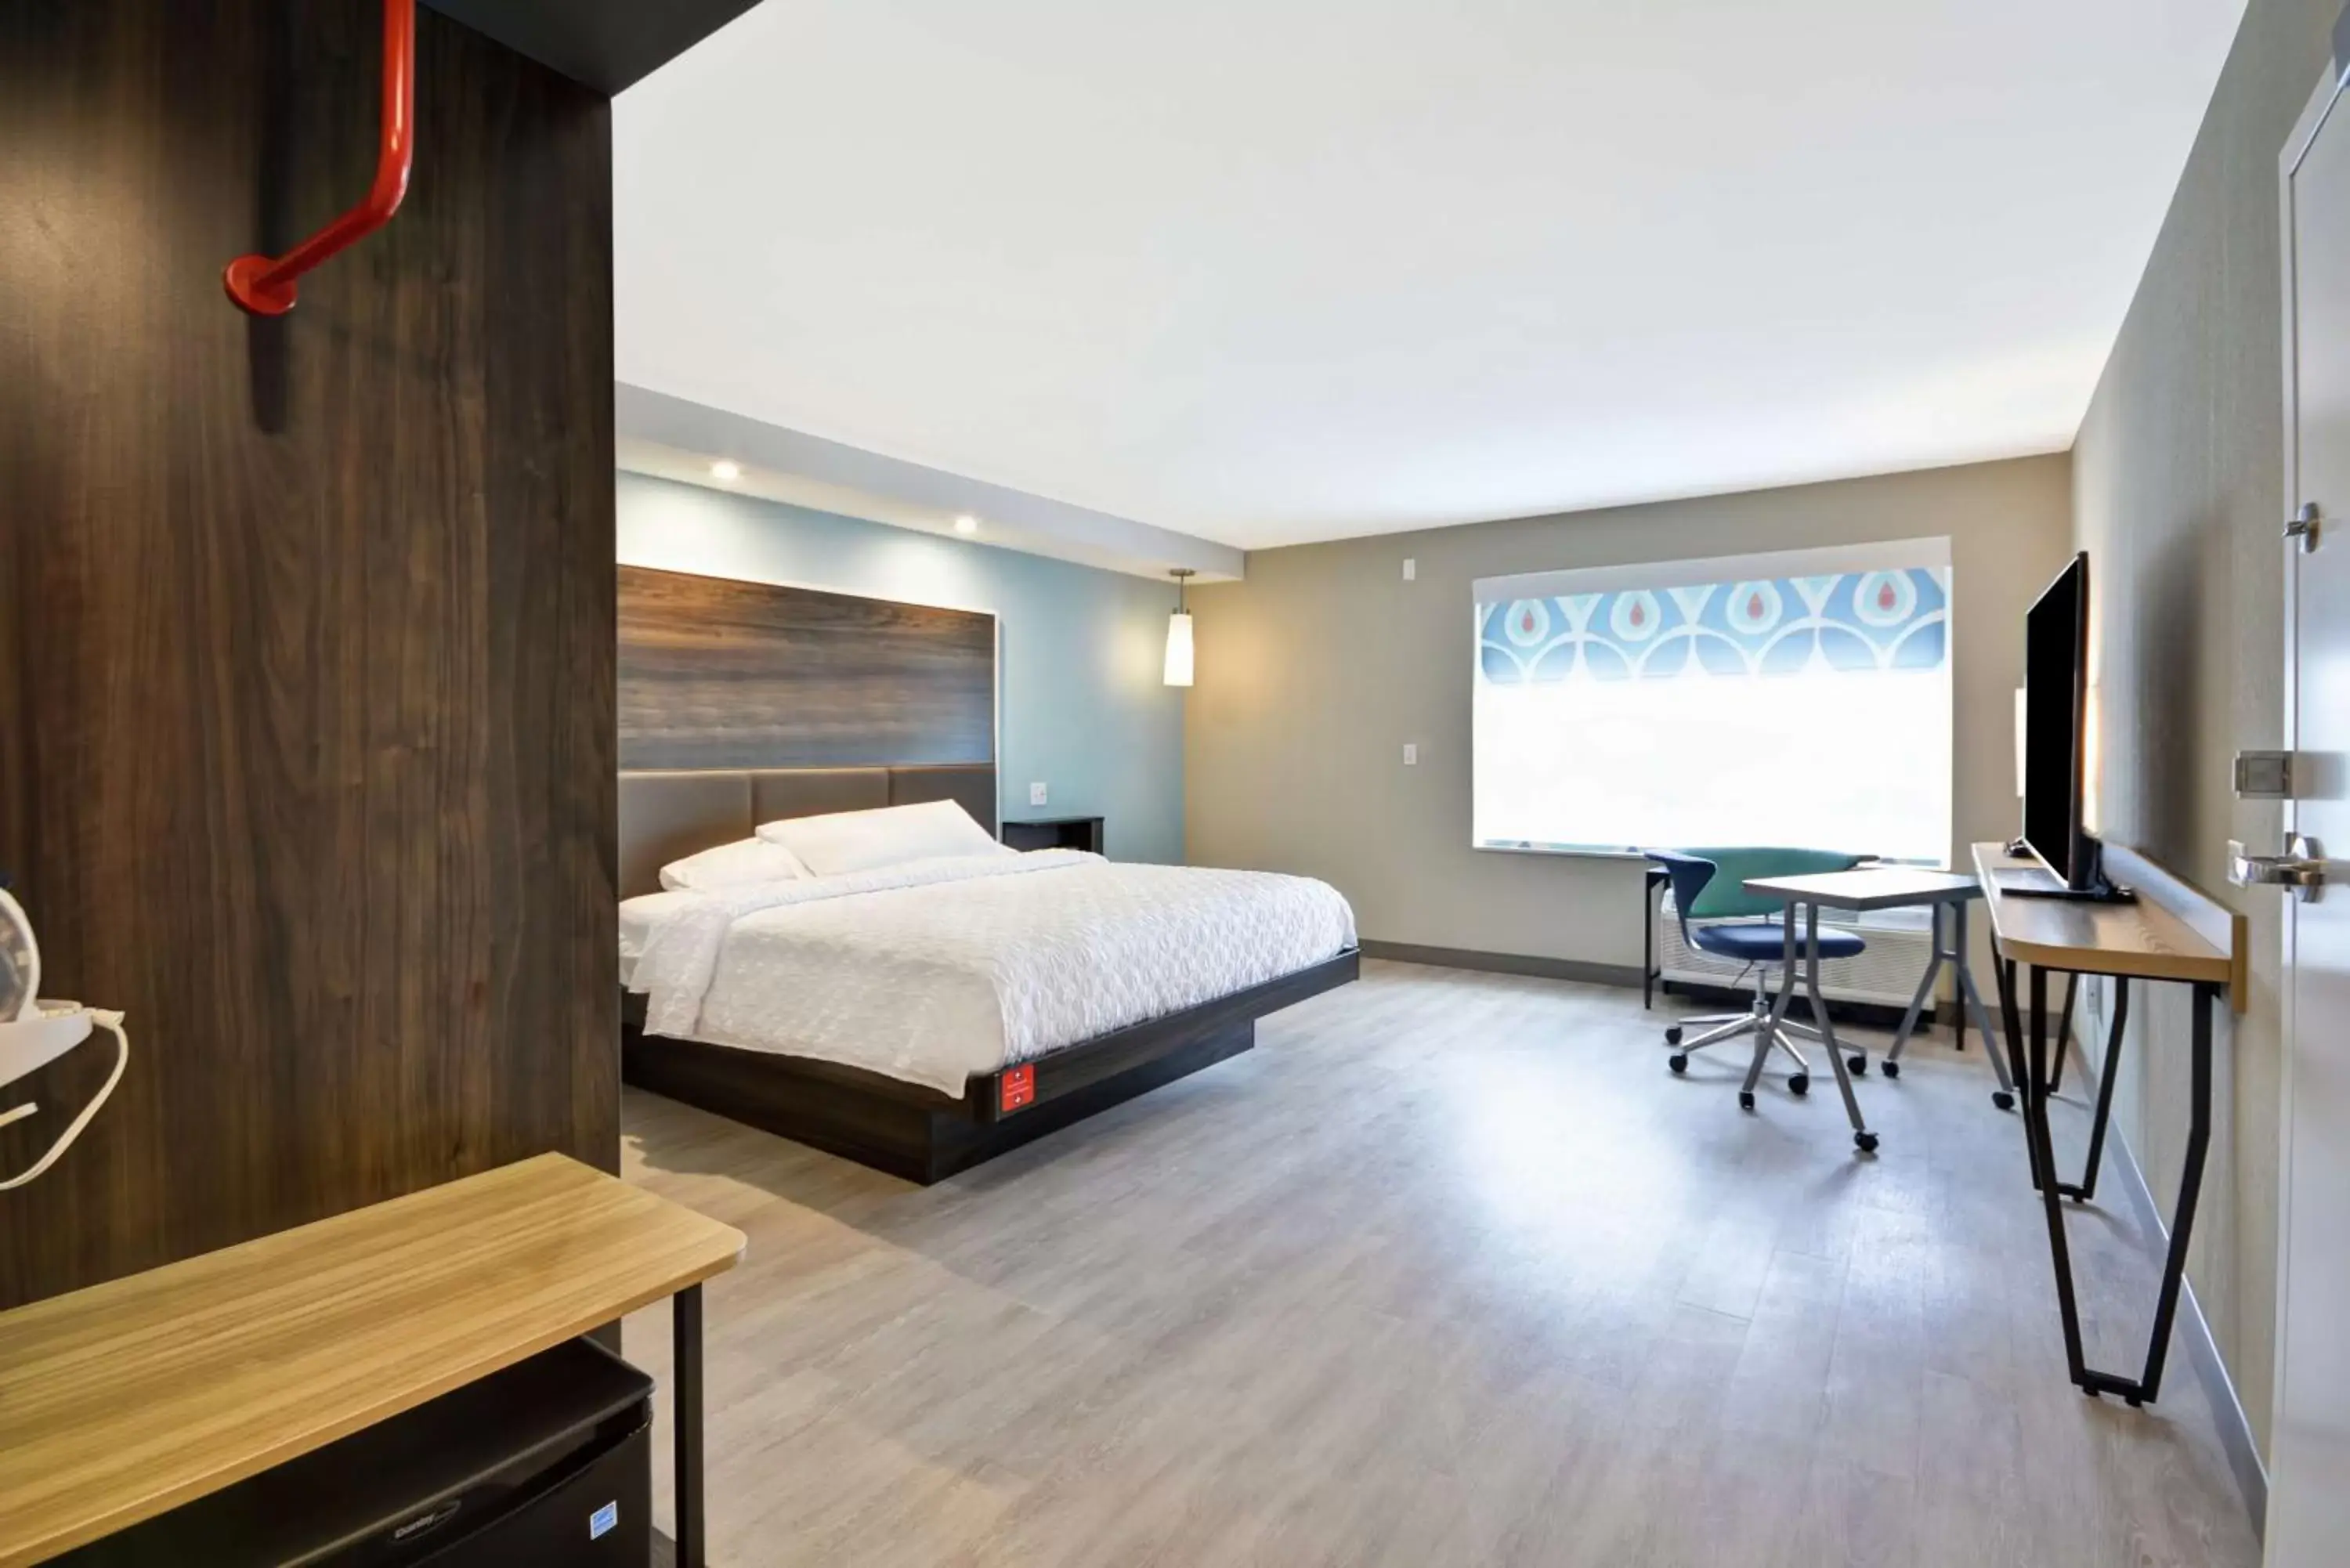 Bedroom in Tru By Hilton Chicopee Springfield